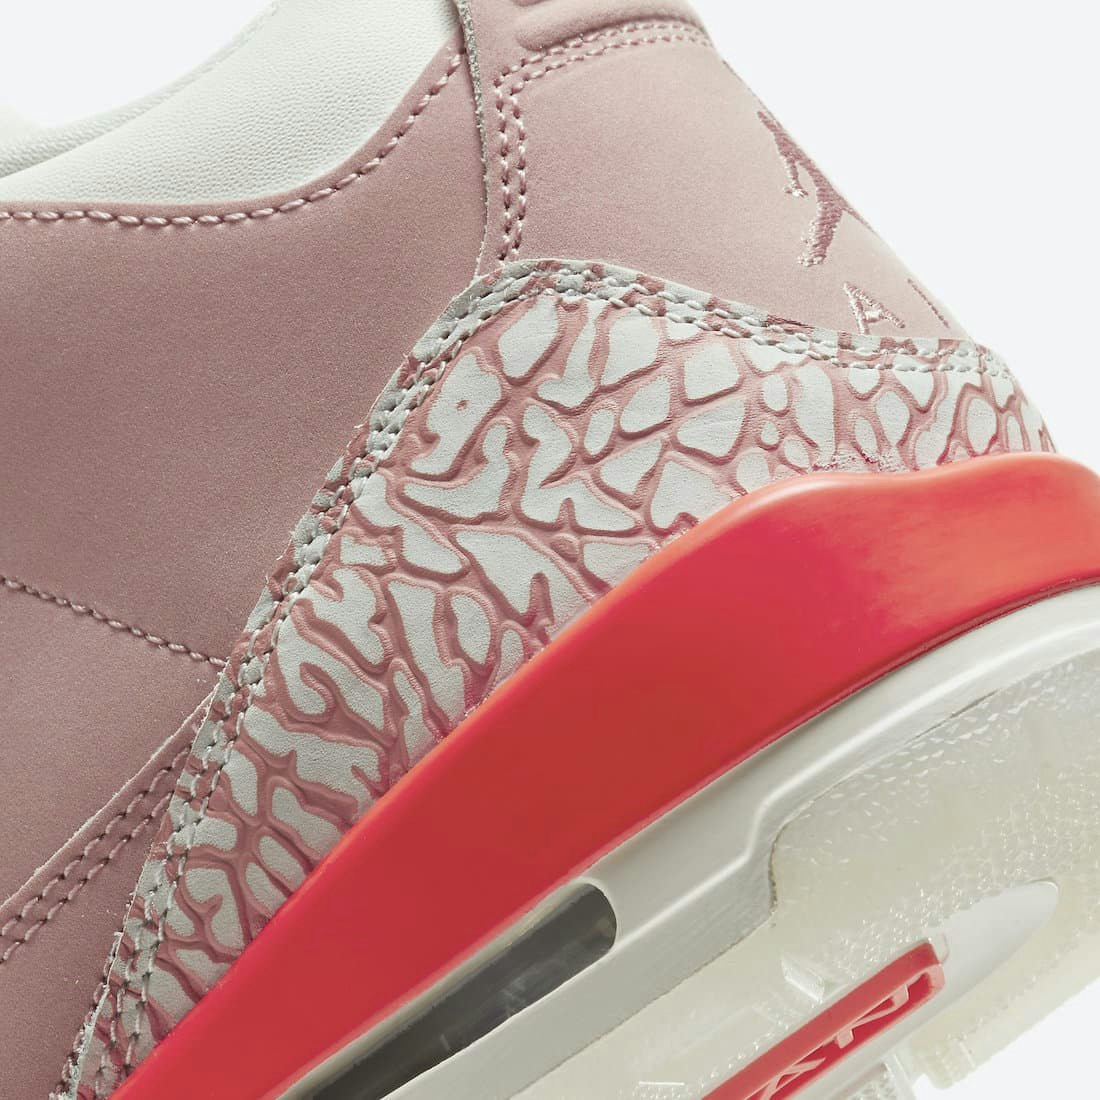 Air Jordan 3 Retro Wmns "Rust Pink"